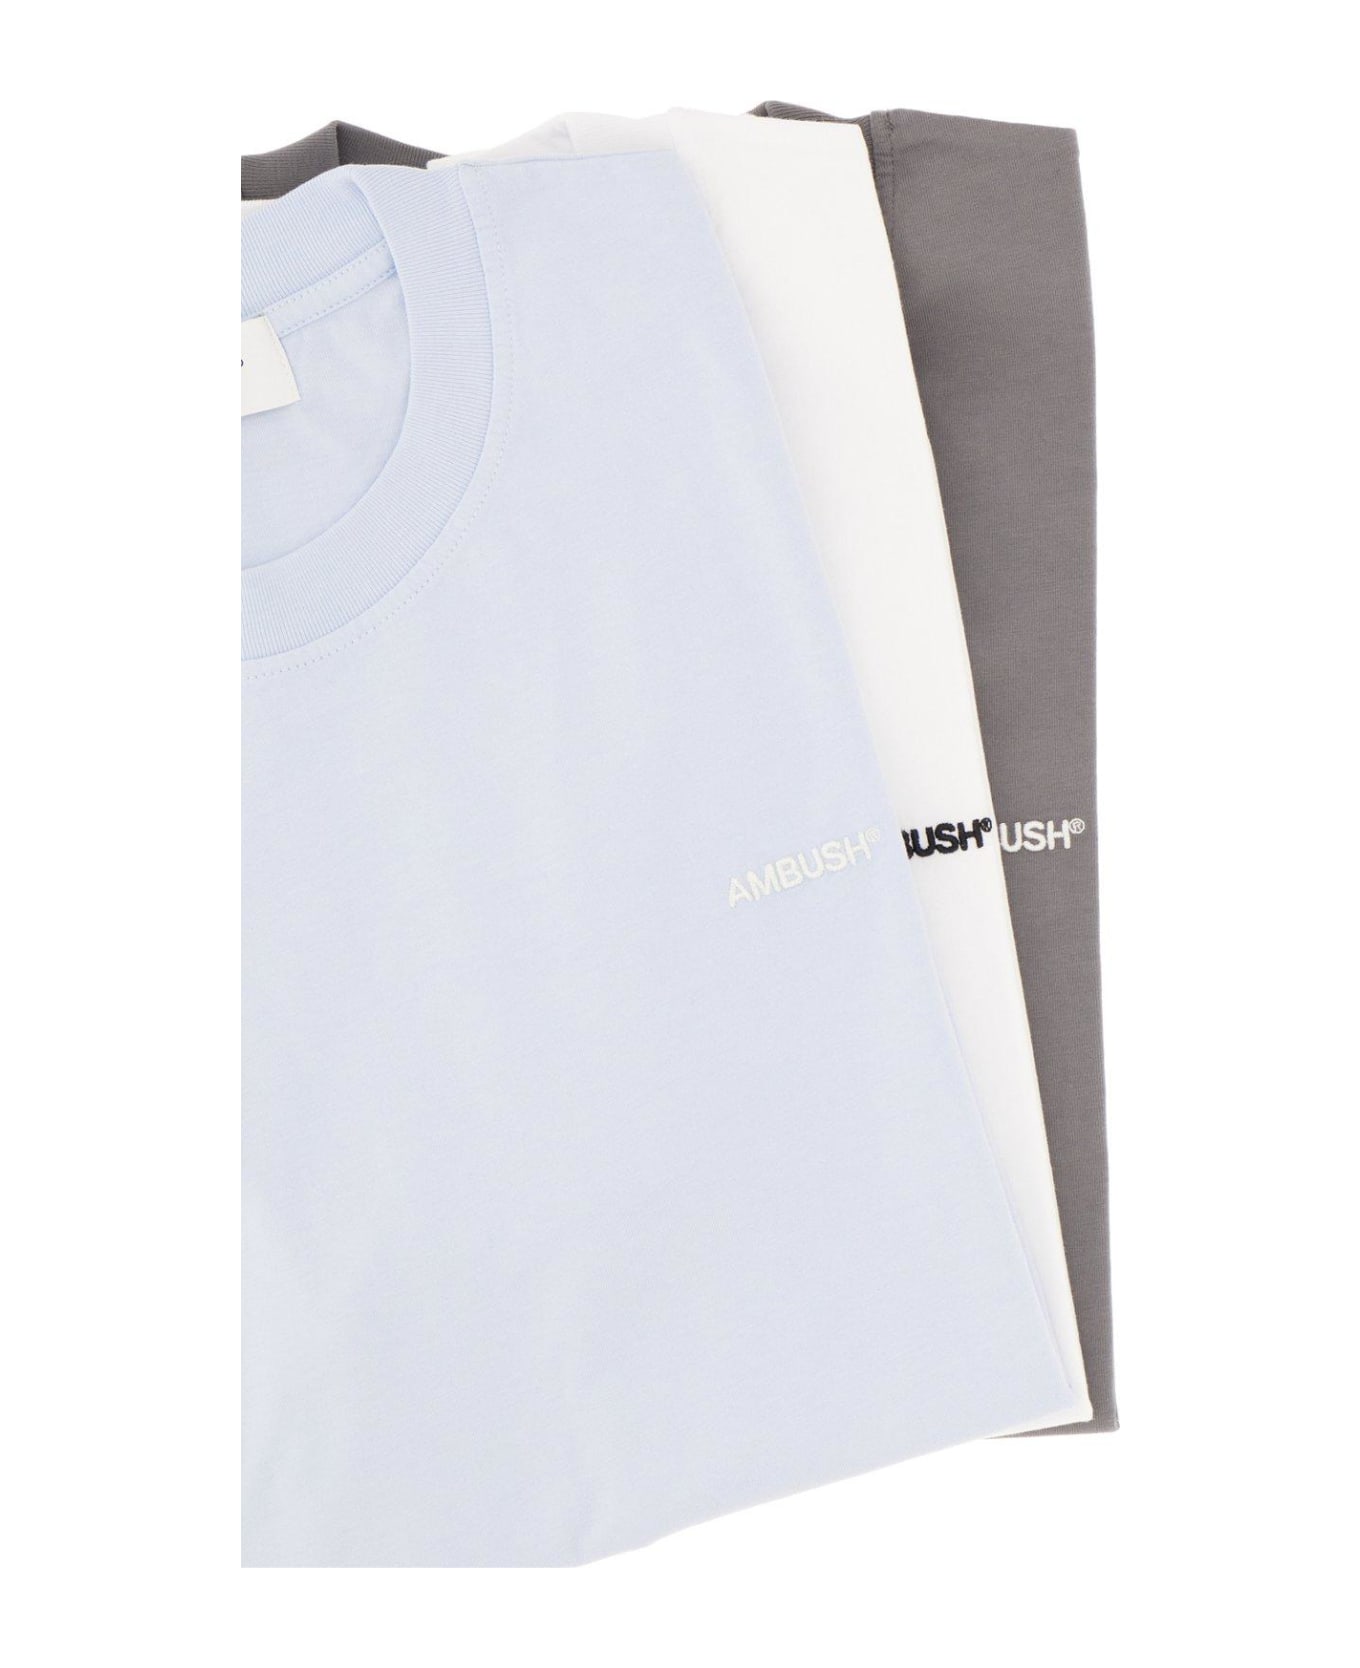 AMBUSH Logo Printed Three Pack T-shirt - Multicolor シャツ